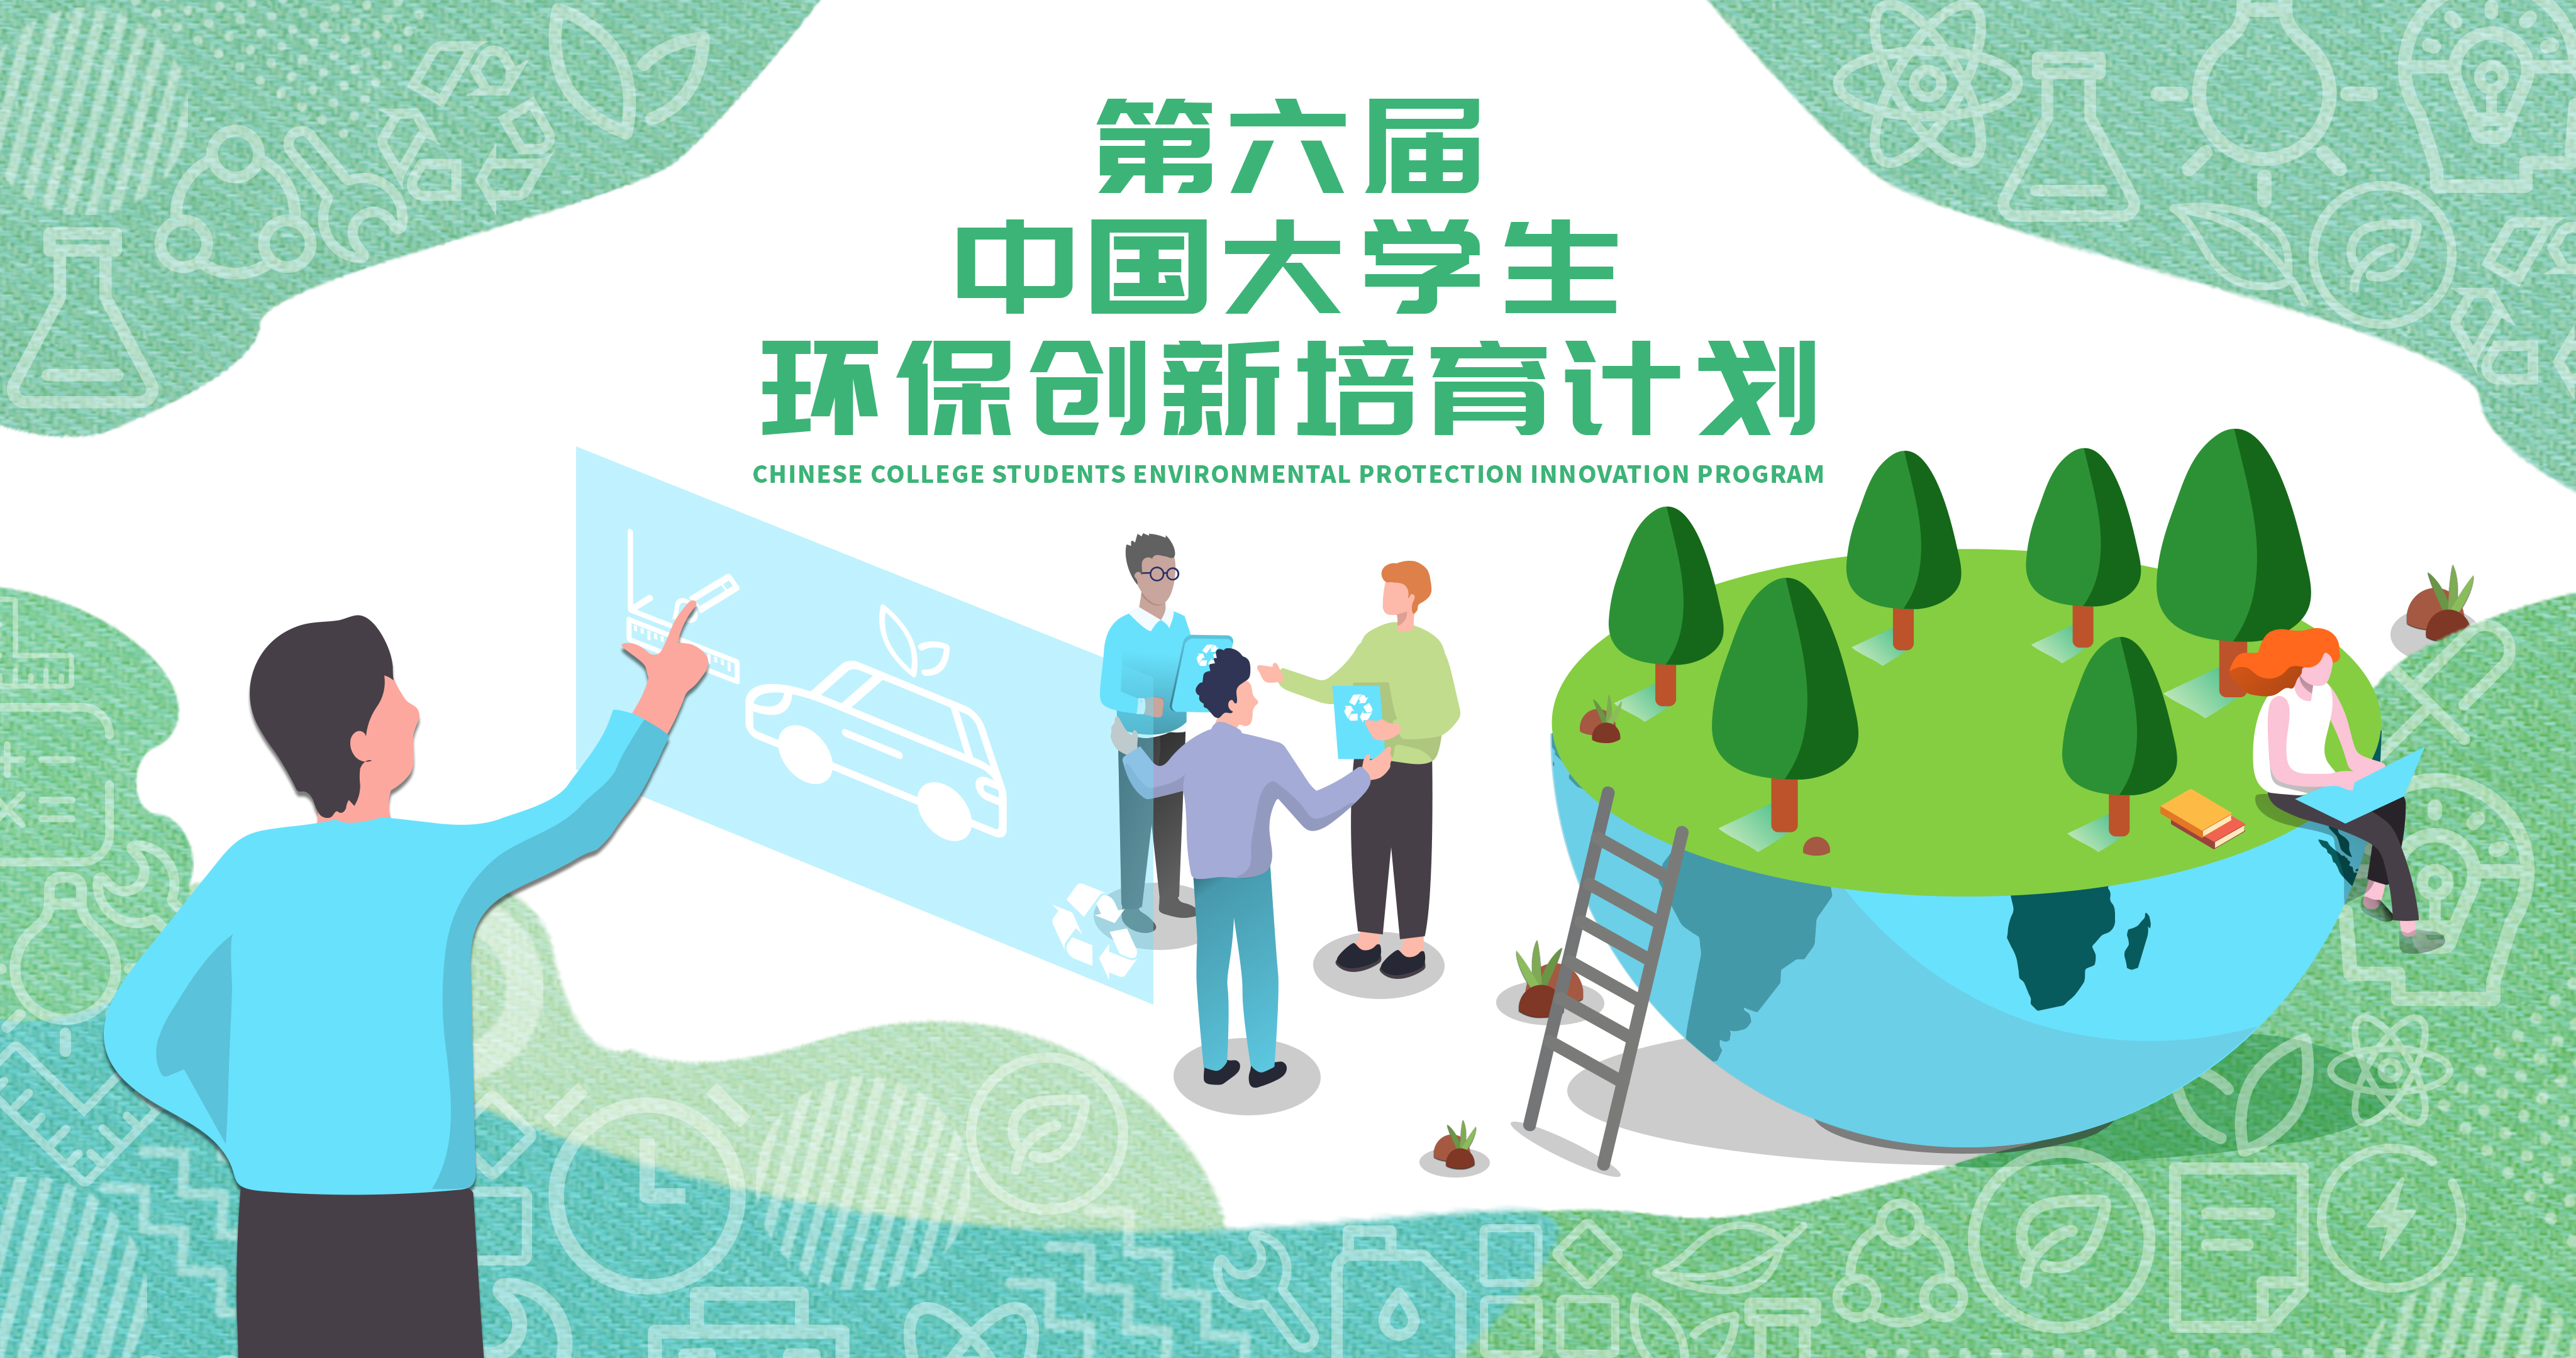 第六届“中国大学生环保创新培育计划”燃情收官